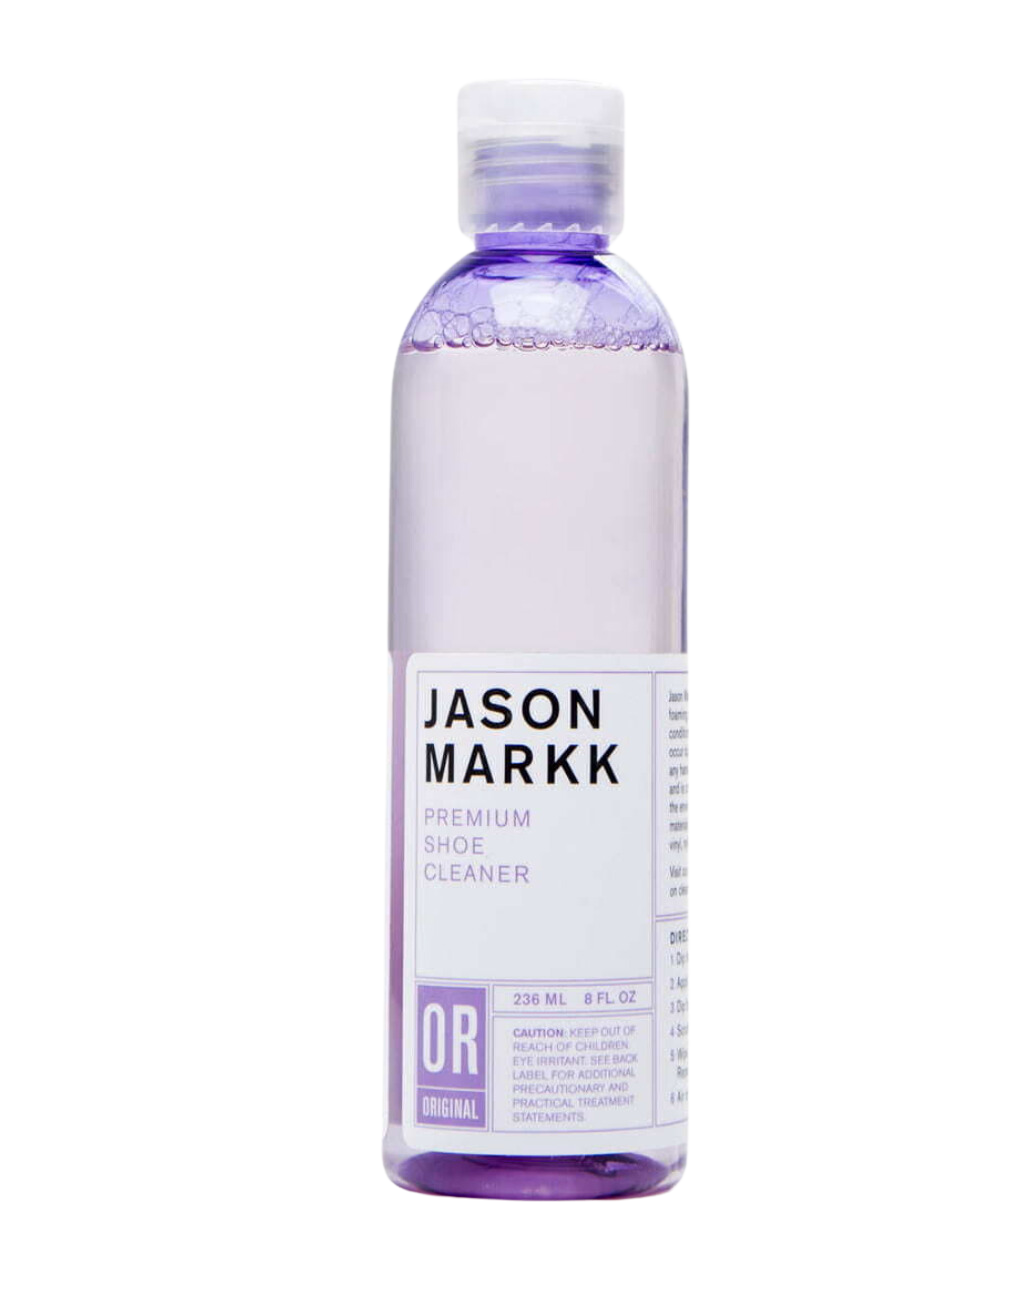 JASON MARKK – Premium-Tiefenreiniger